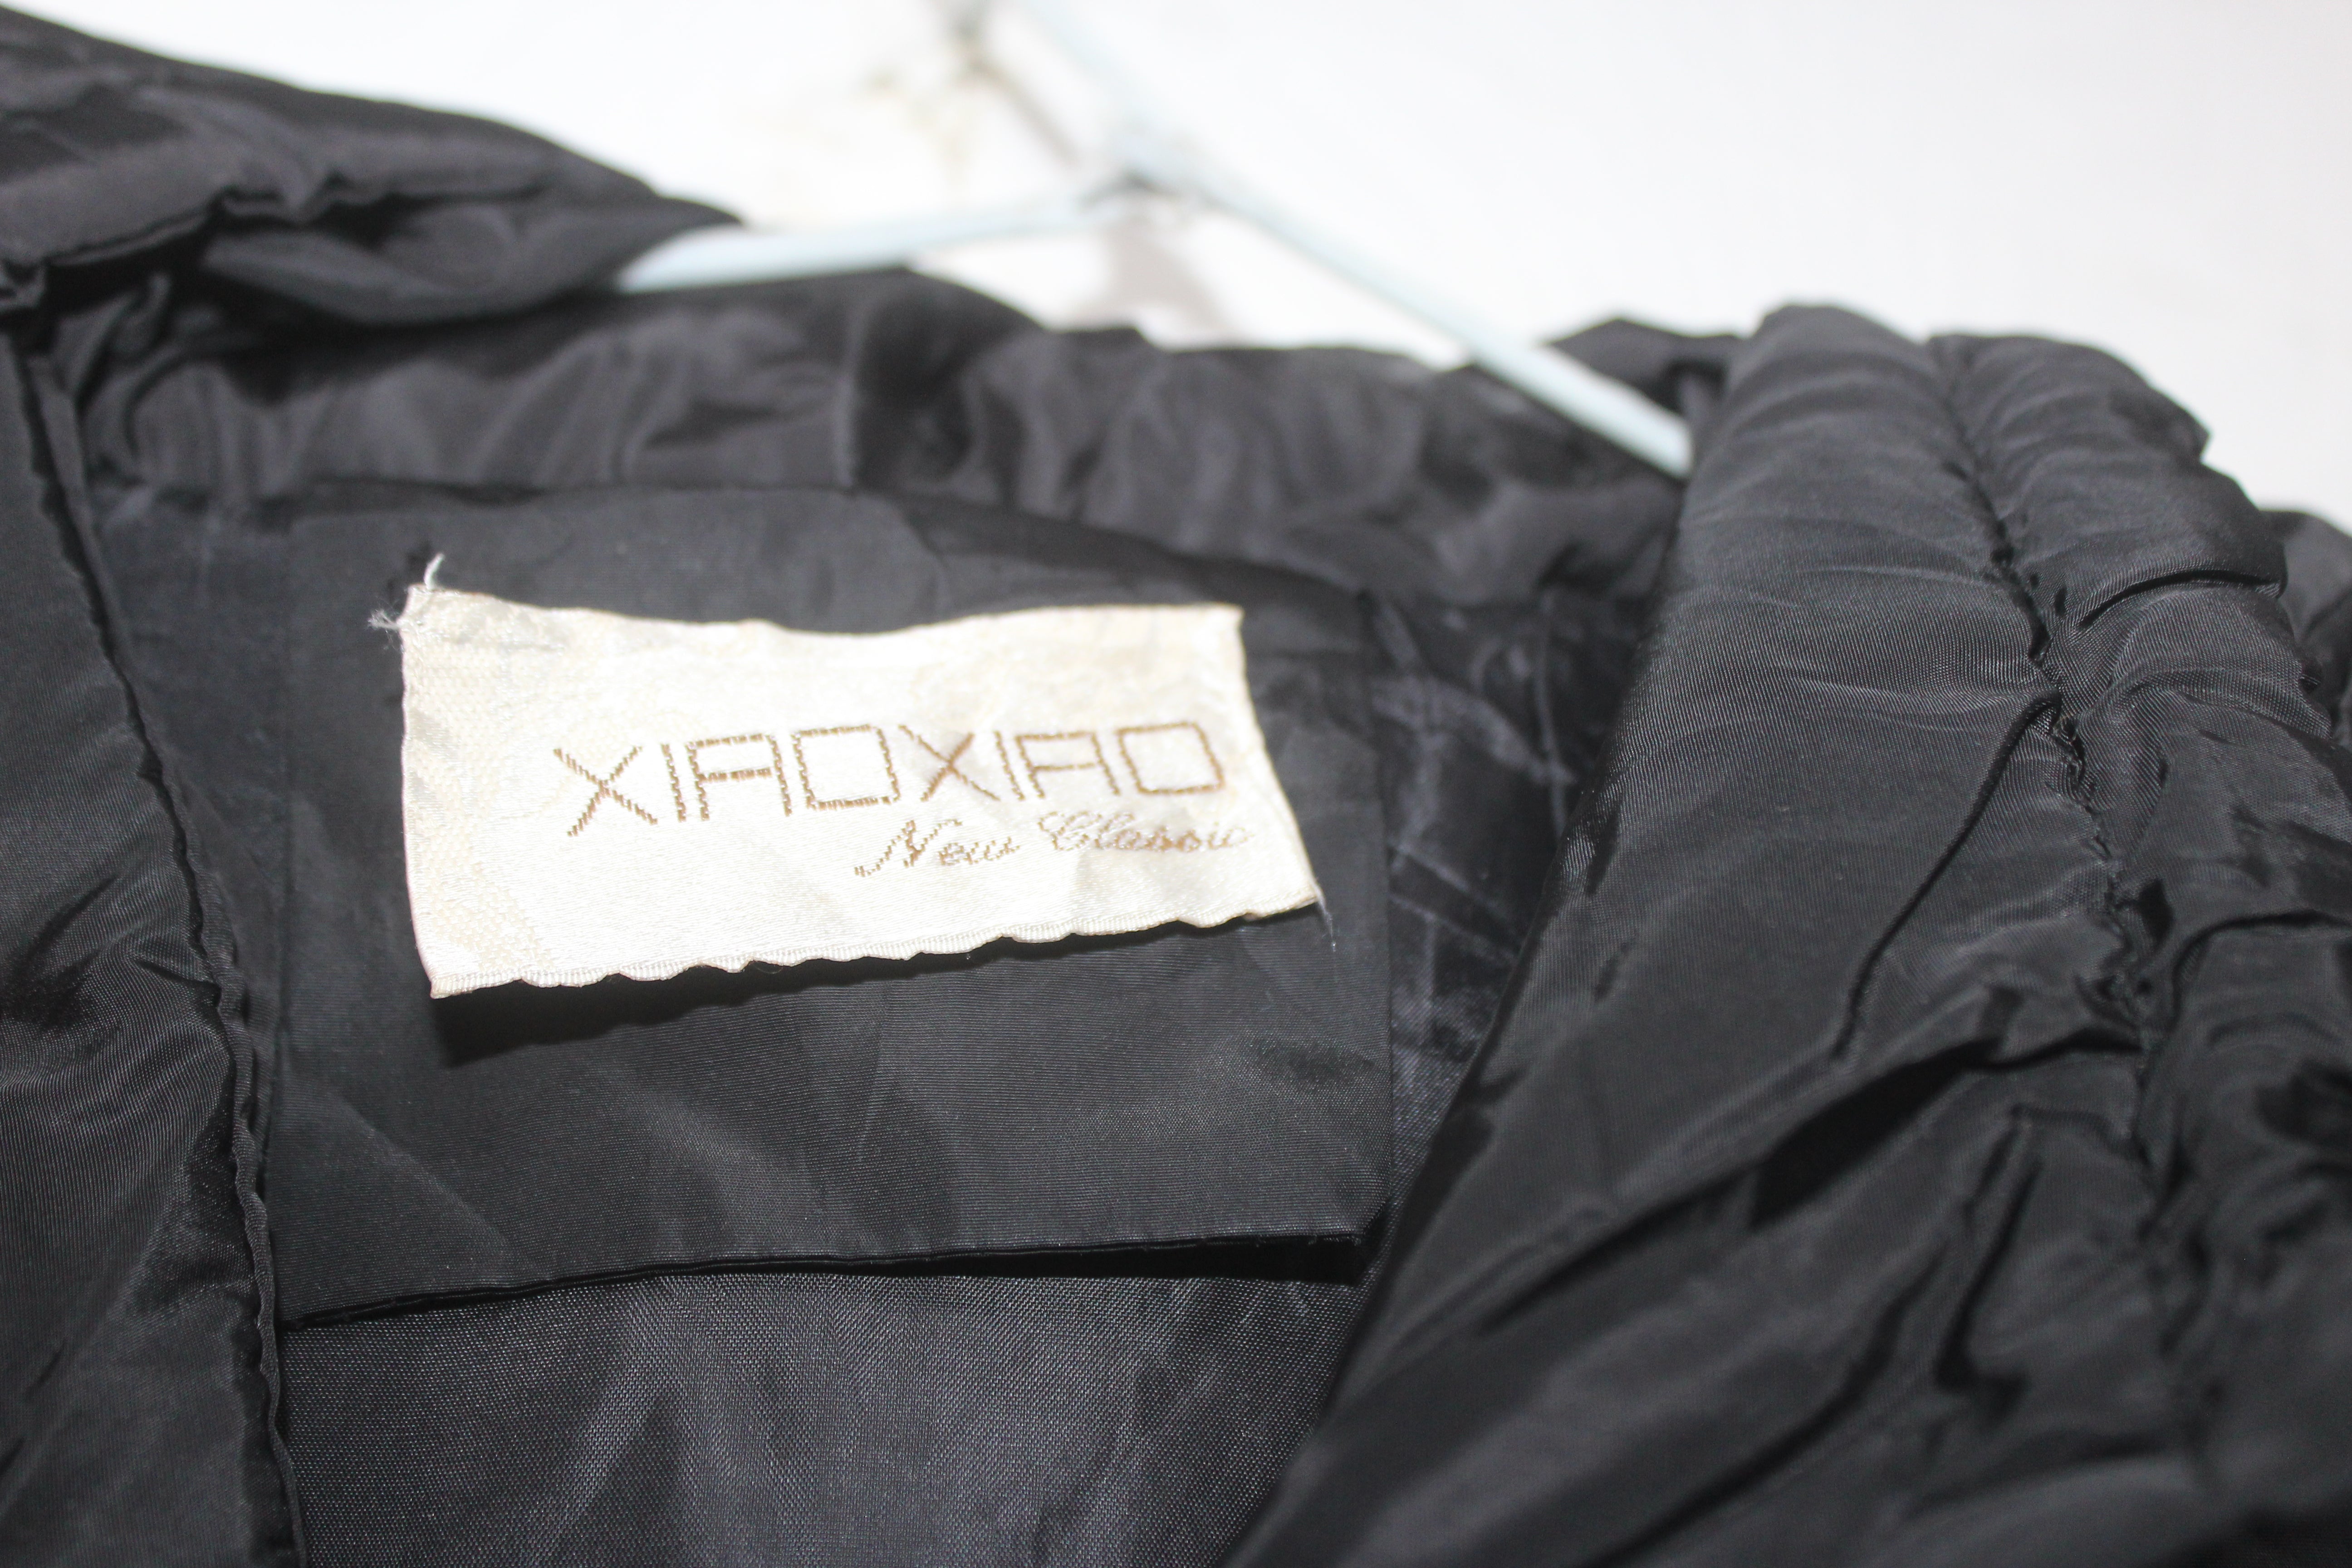 XIAO XIAO Branded Original Parachute Puffer For Women Jacket